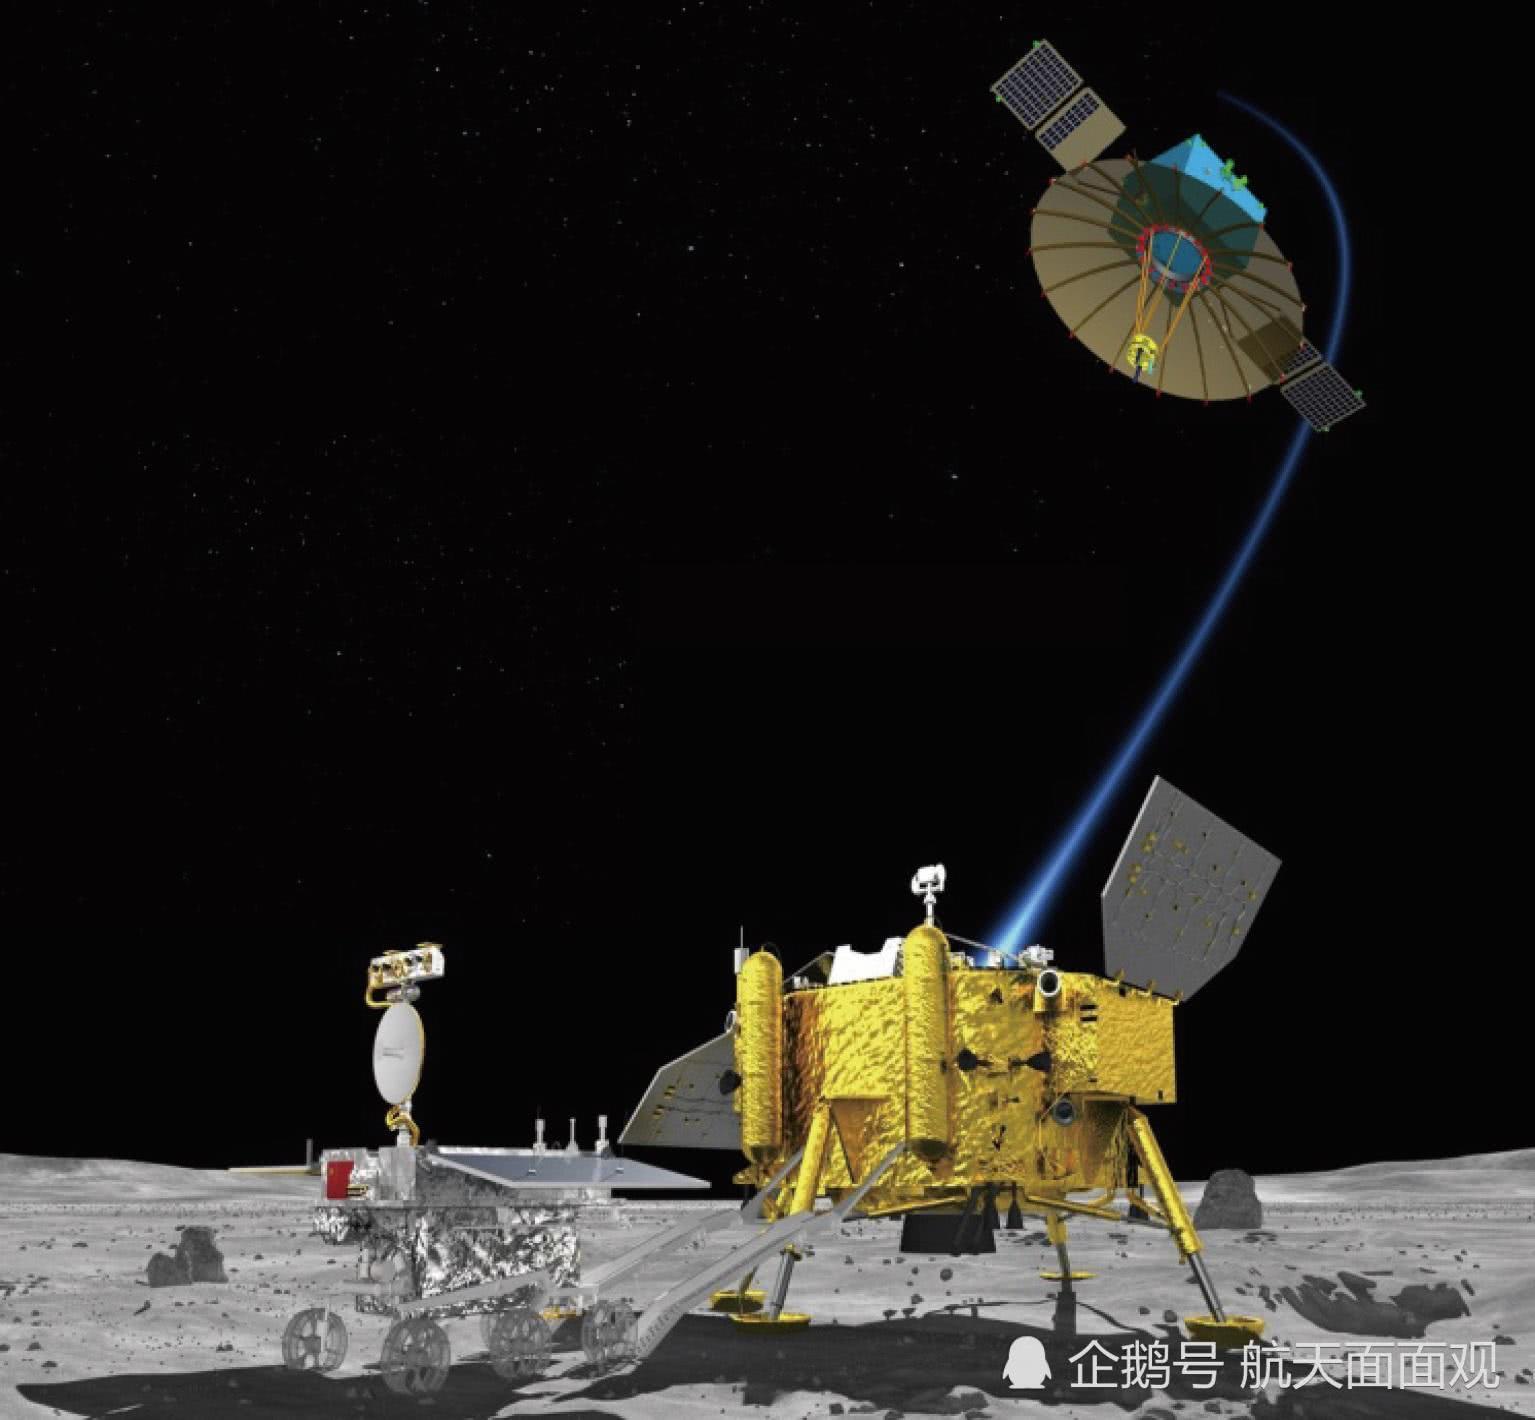 嫦娥五号奔向月球！中国向载人登月又迈进了一大步 |【经纬低调分享】_创事记_新浪科技_新浪网